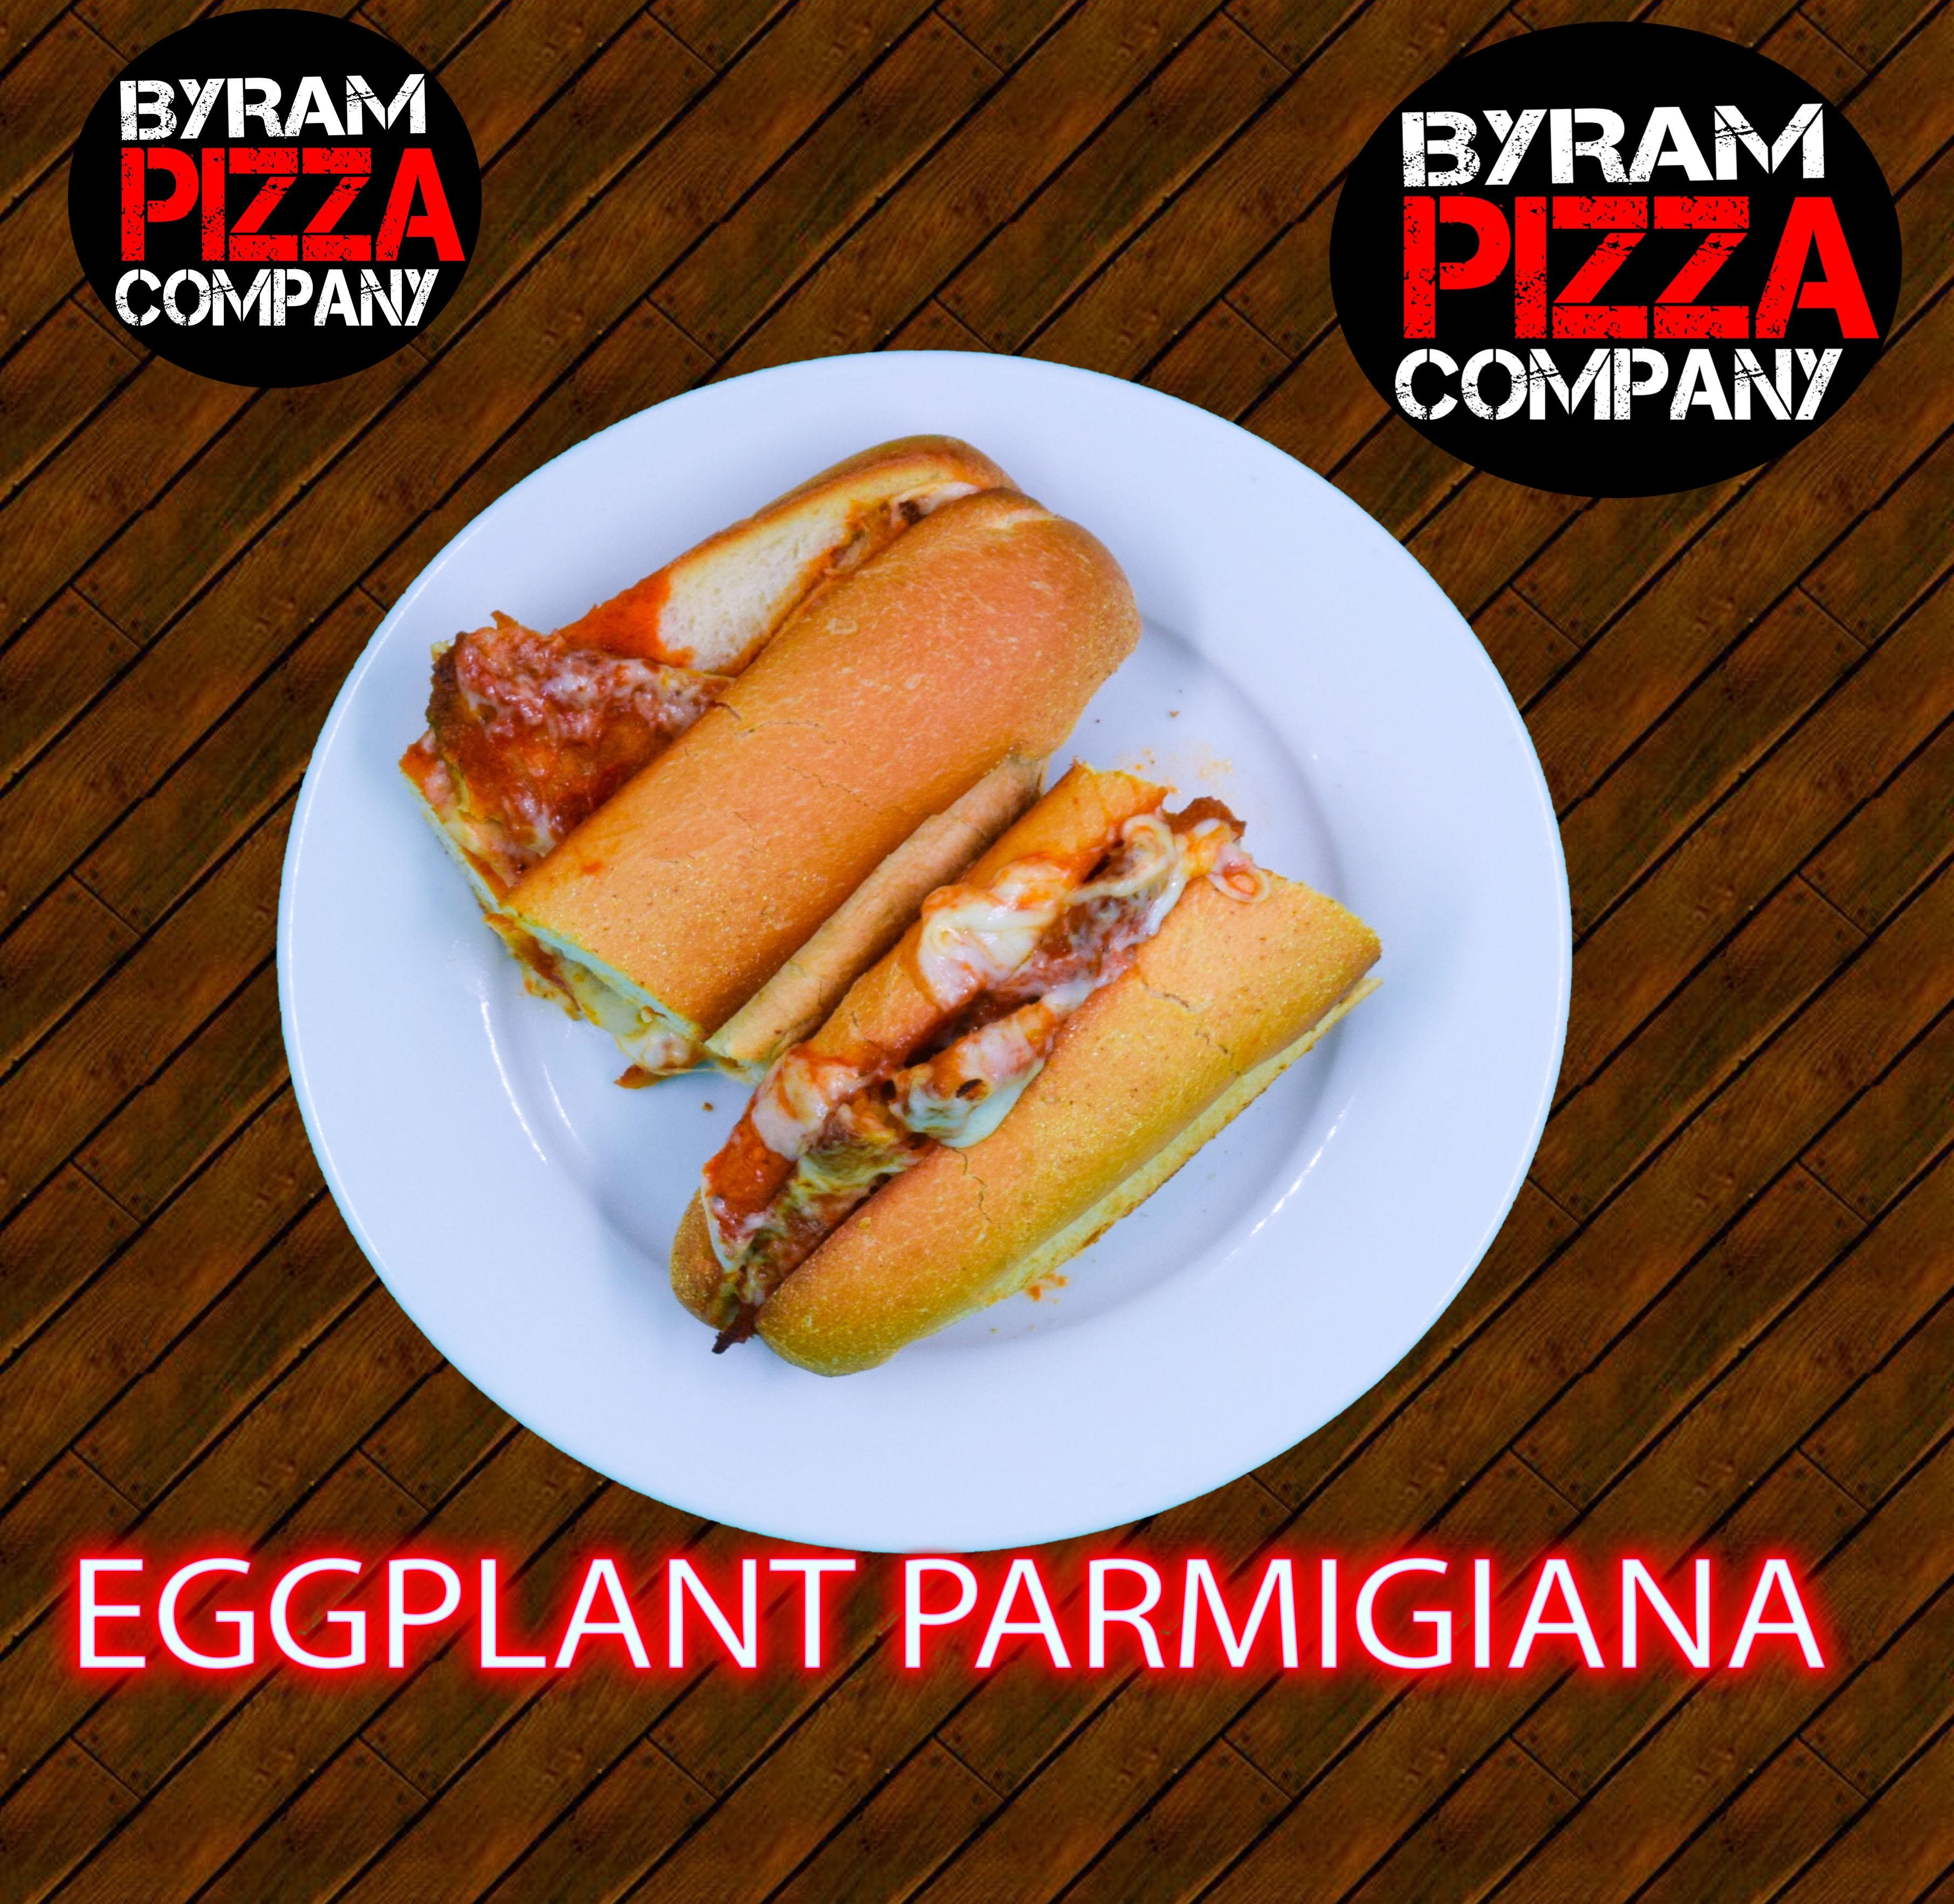 Eggplant Parmigiana wedge